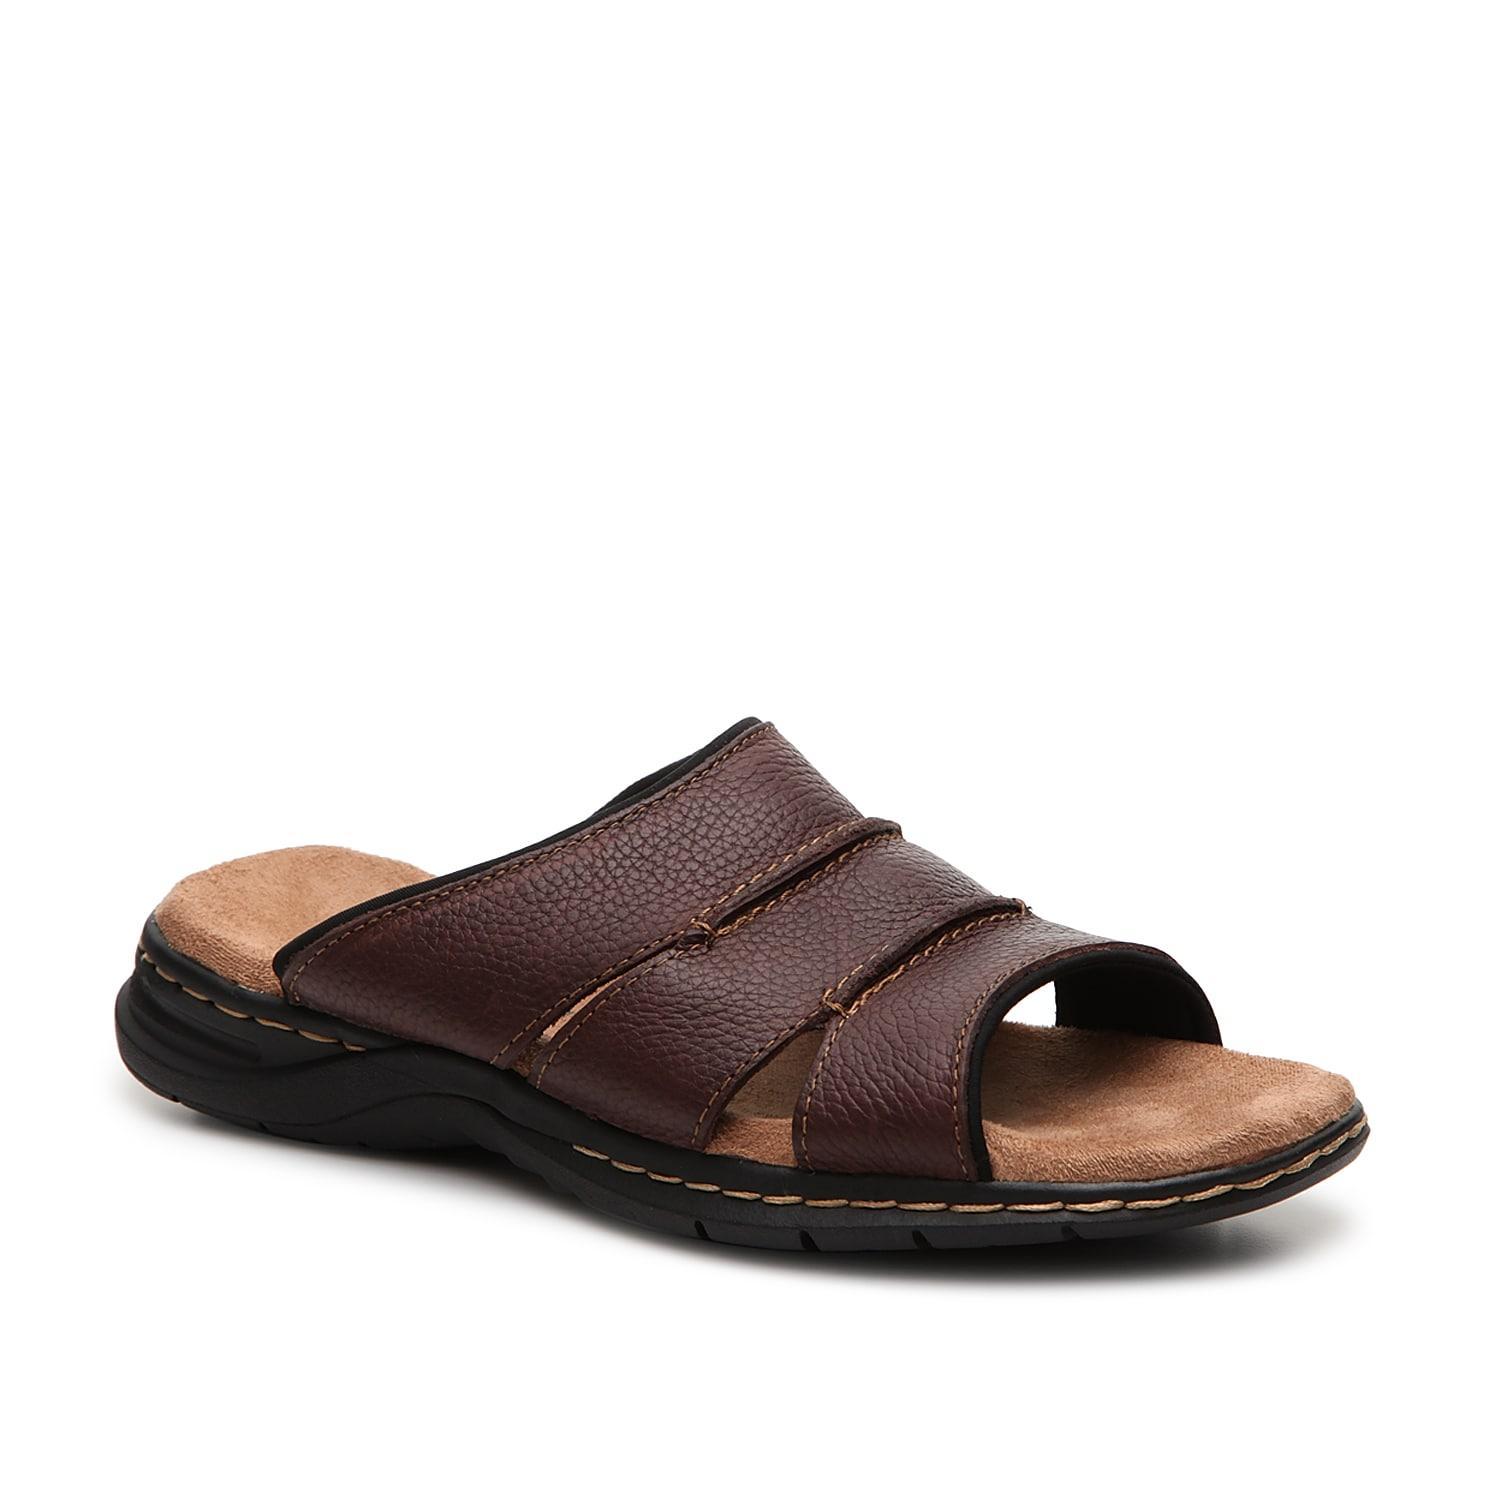 Dr. Scholls Gordon Mens Leather Slide Sandals Brown Product Image